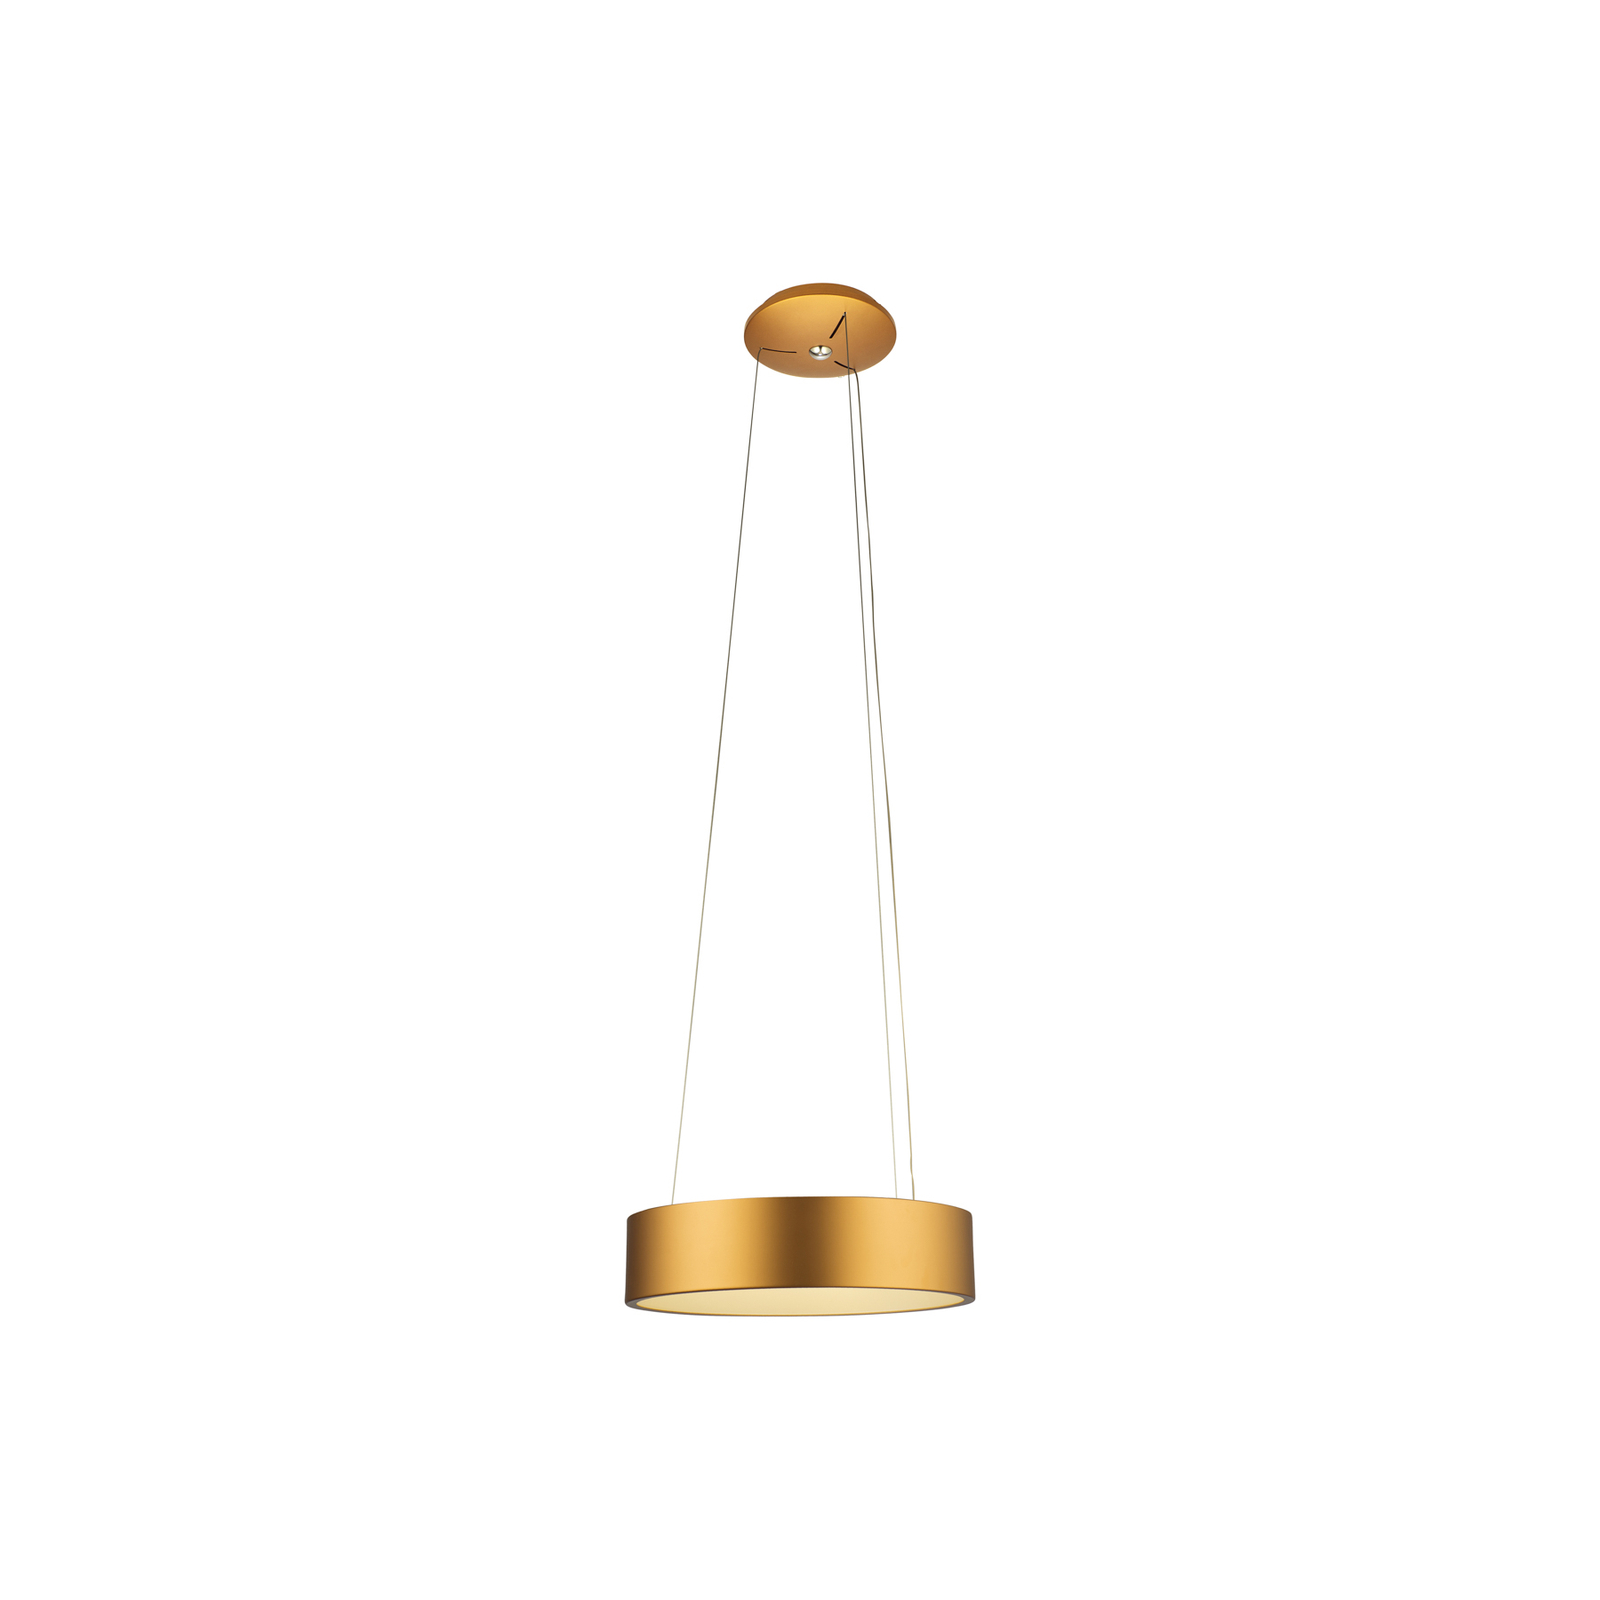 Aluminor Epsilon LED pendant light, Ø 62 cm, gold